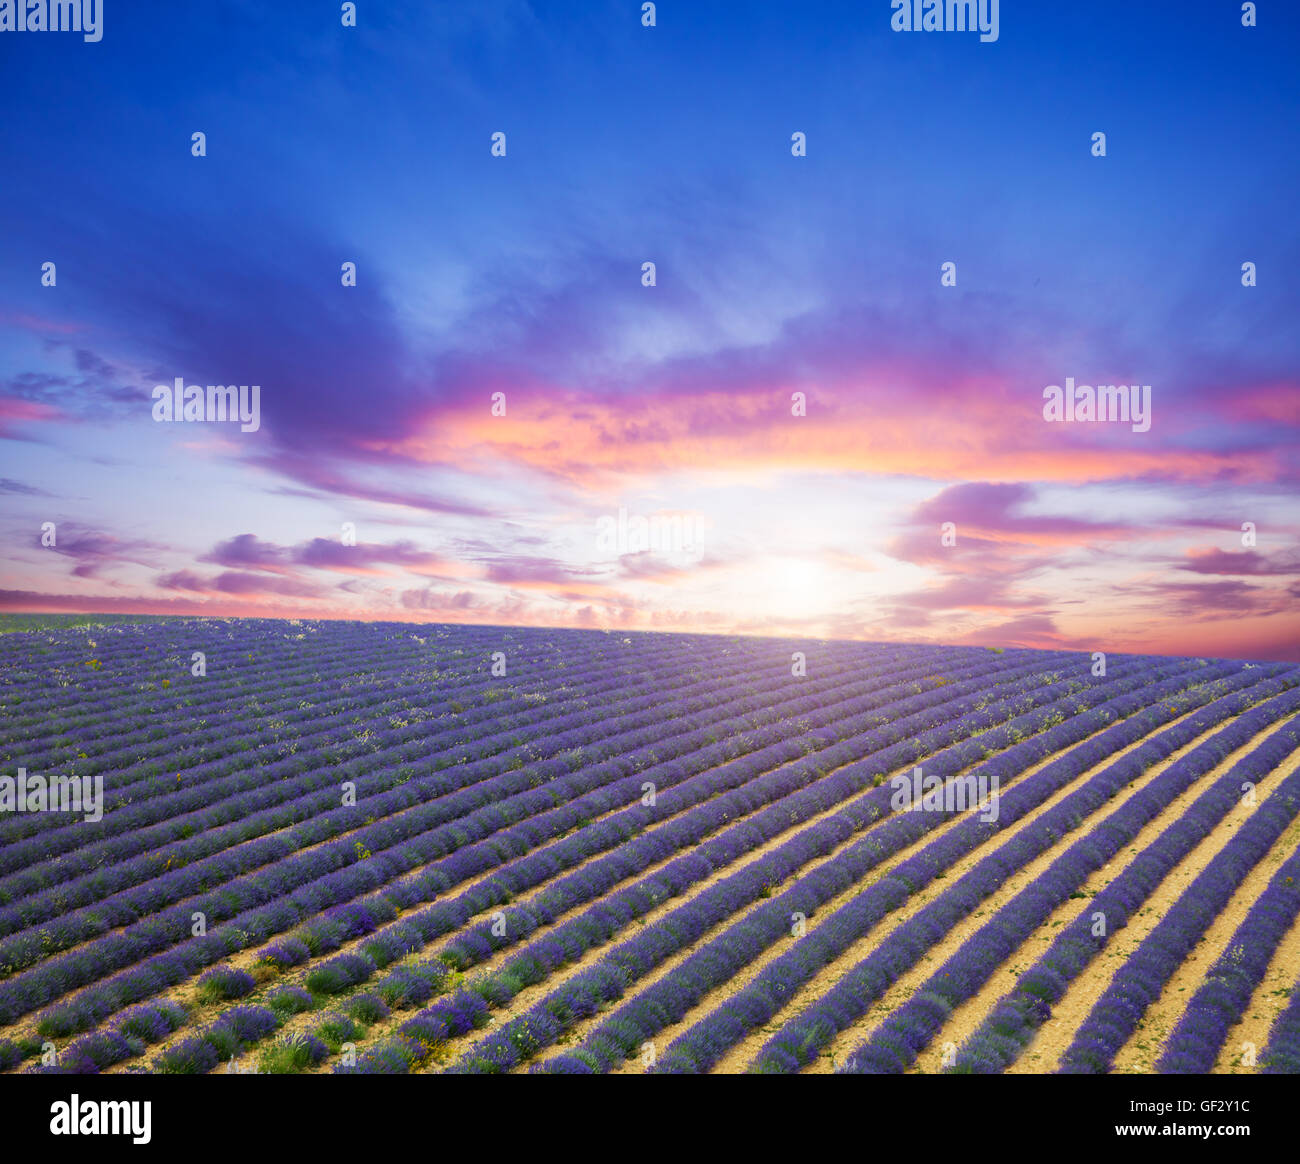 Beau paysage de champ de lavande en fleurs dans le coucher du soleil. Provence, France, Europe. Banque D'Images